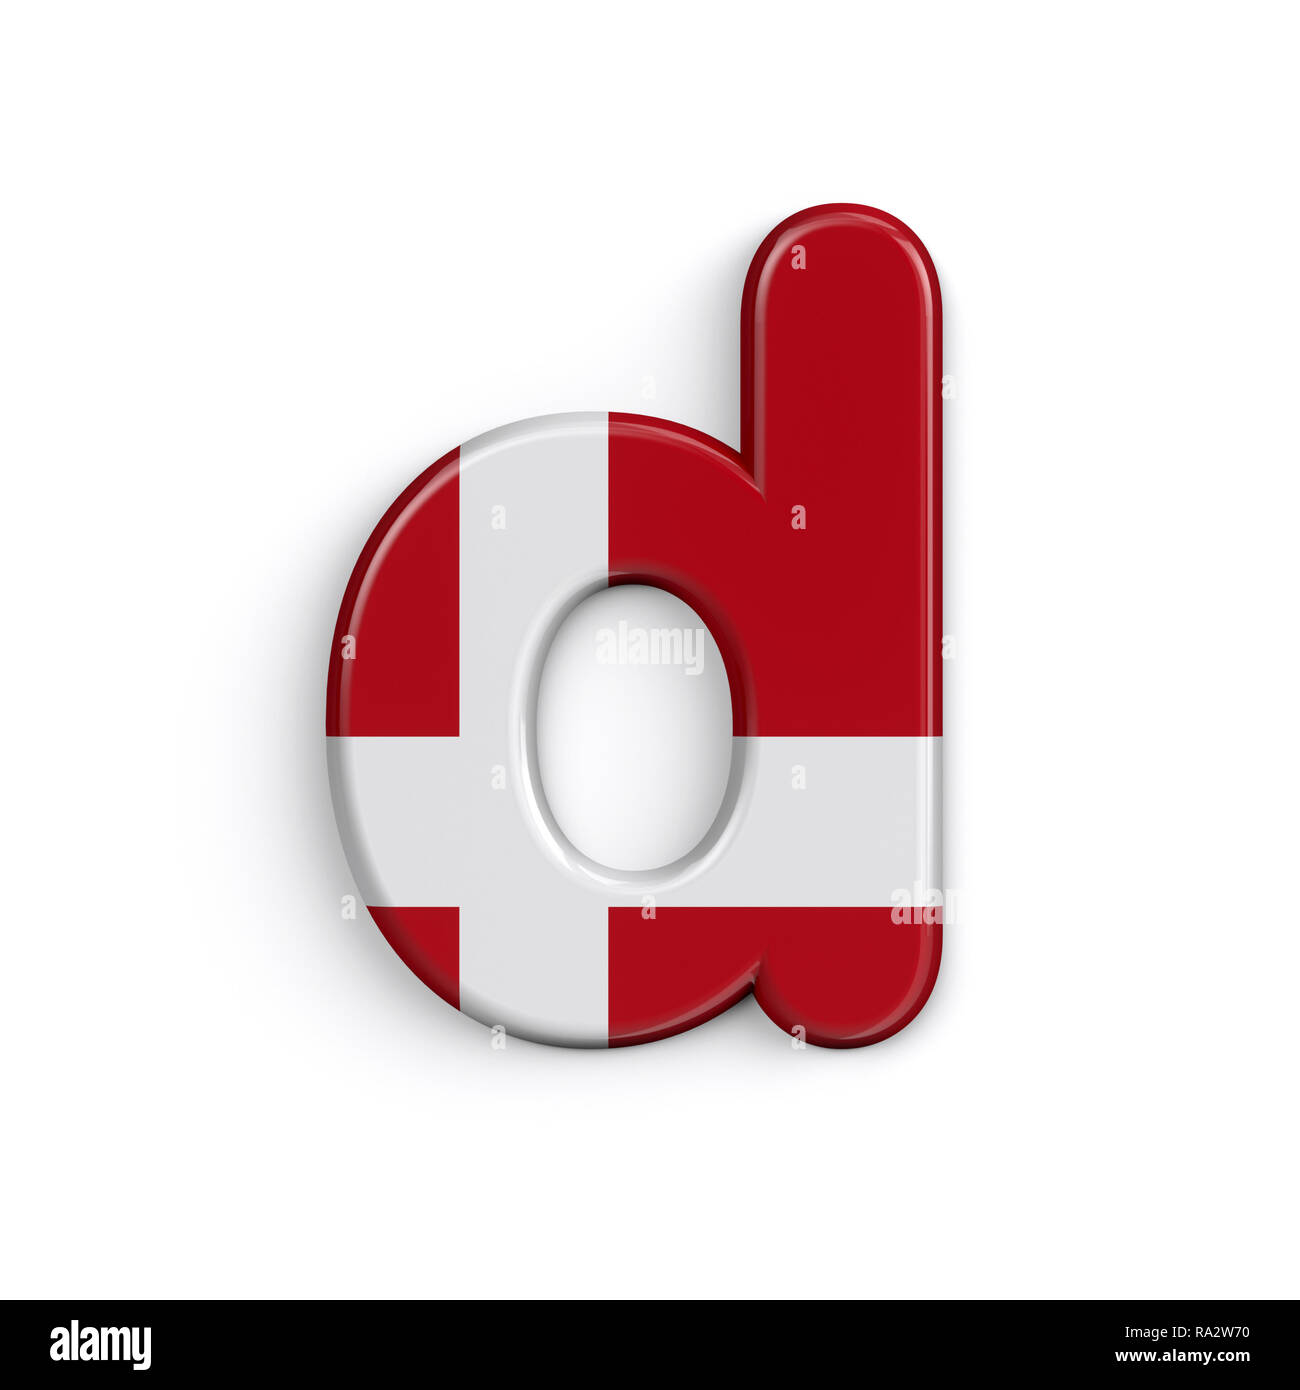 Dinamarca la letra D - Pequeño 3d bandera danesa font aislado sobre fondo blanco. Este alfabeto es perfecto para creativos ilustraciones relacionadas pero no limitado Foto de stock